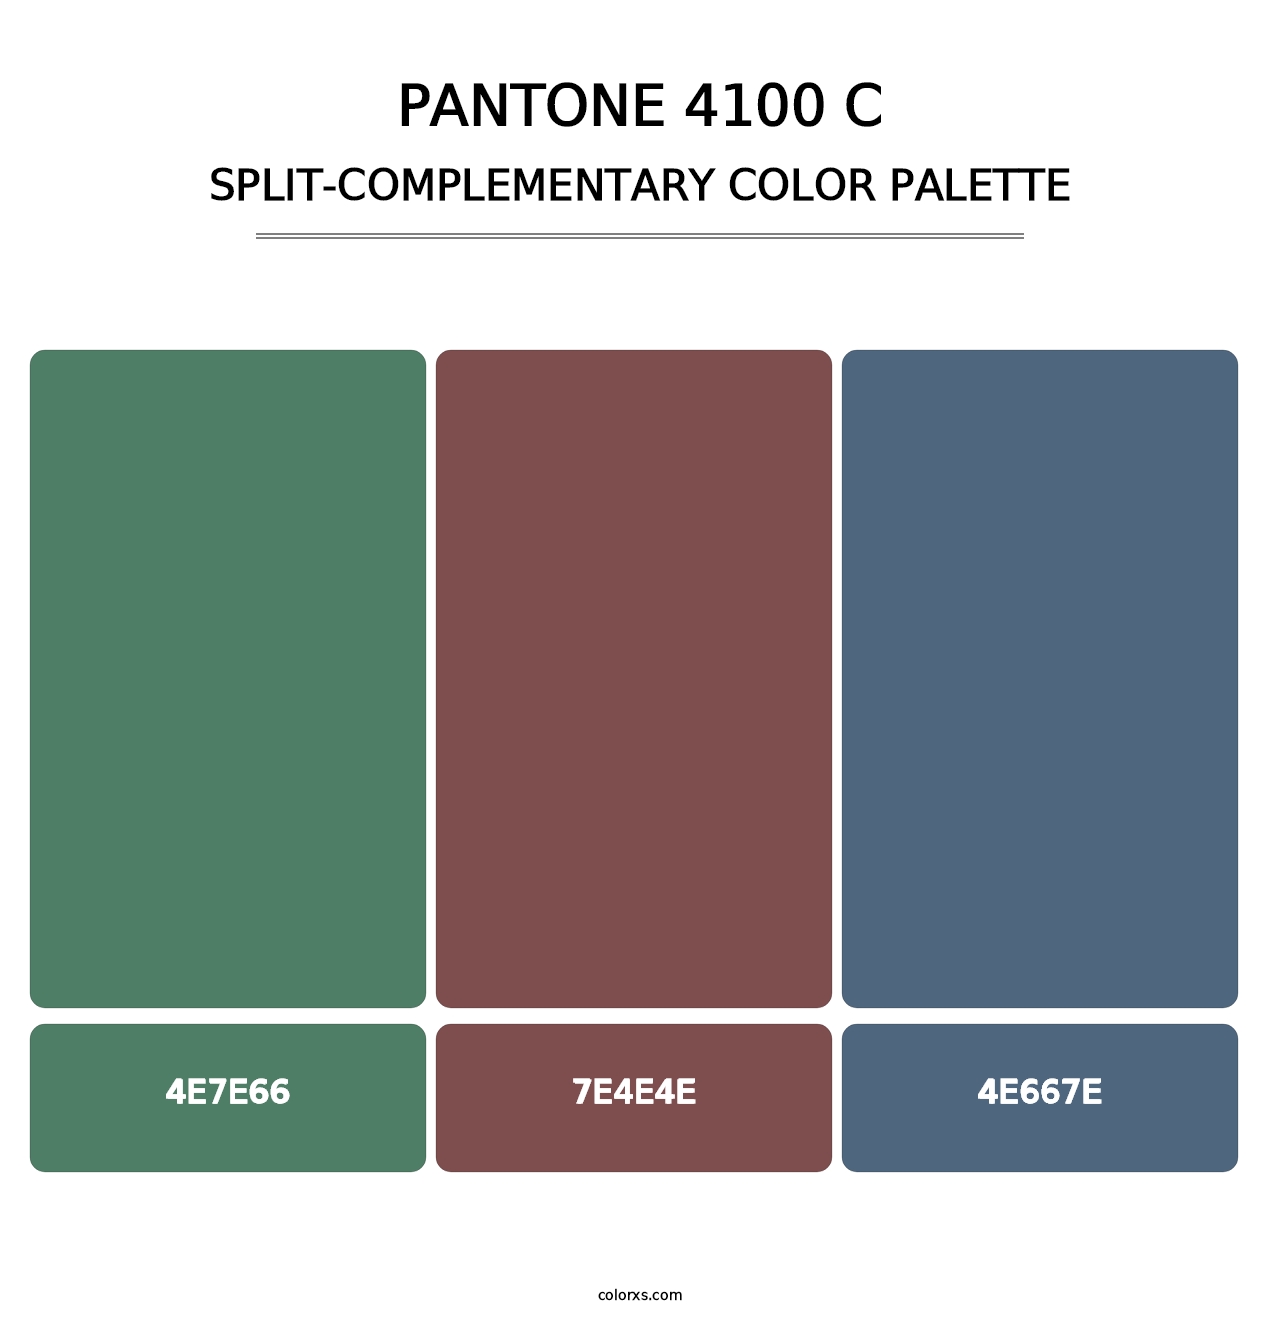 PANTONE 4100 C - Split-Complementary Color Palette